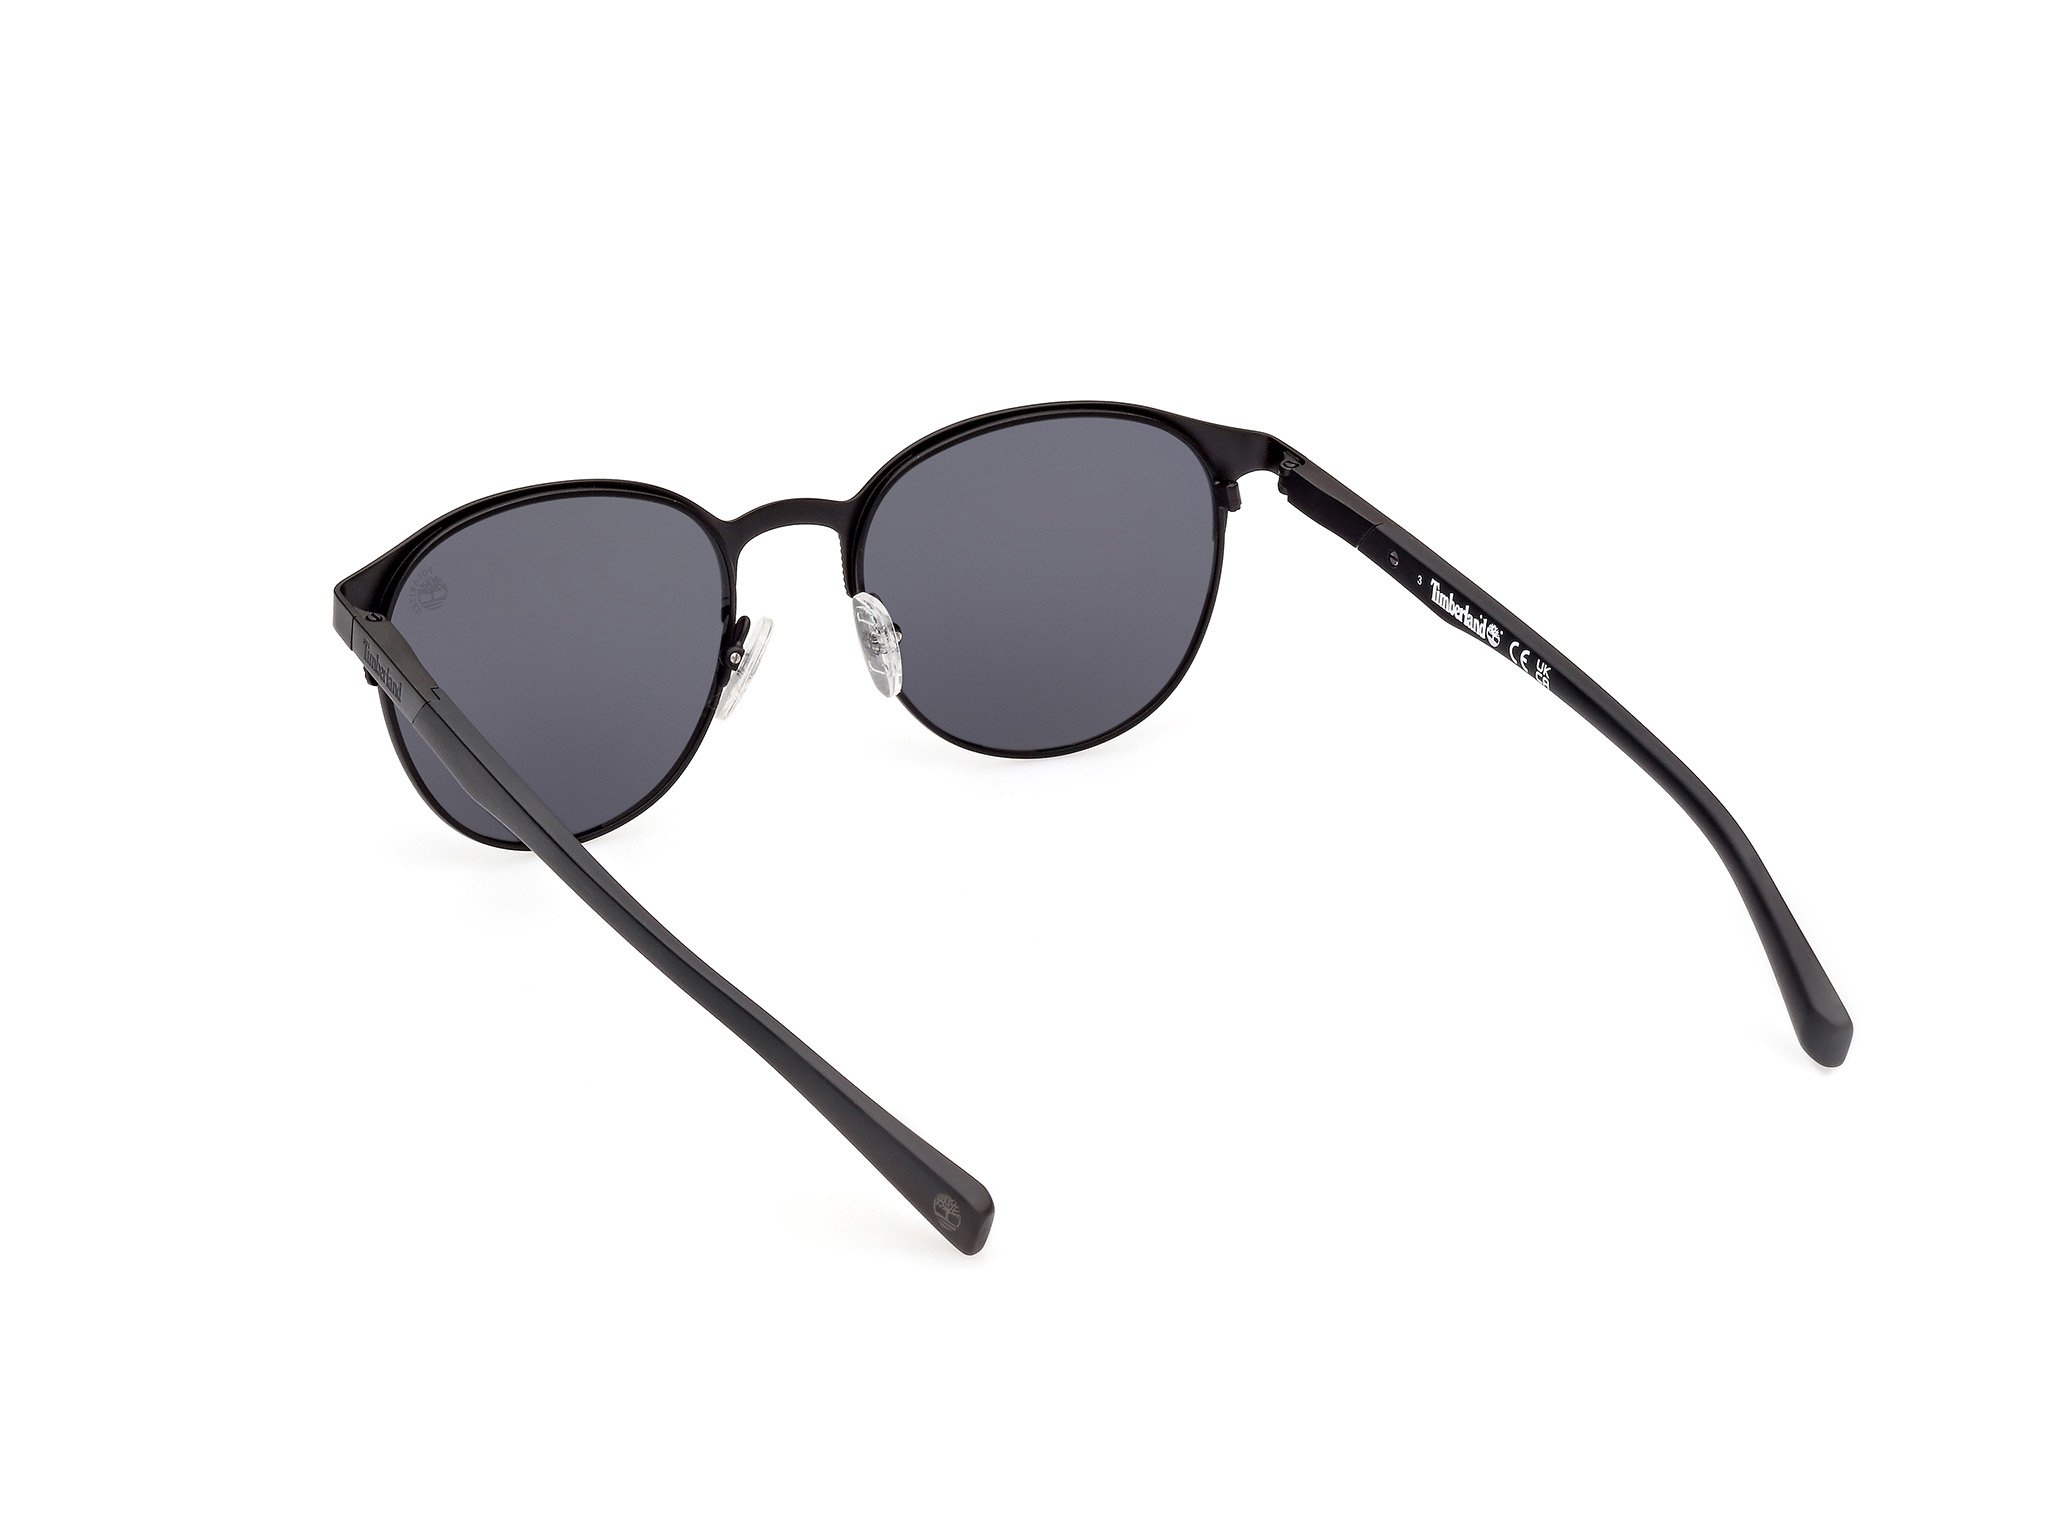 Das Bild zeigt die Sonnenbrille TB9313 02D von der Marke Timberland in matt schwarz.